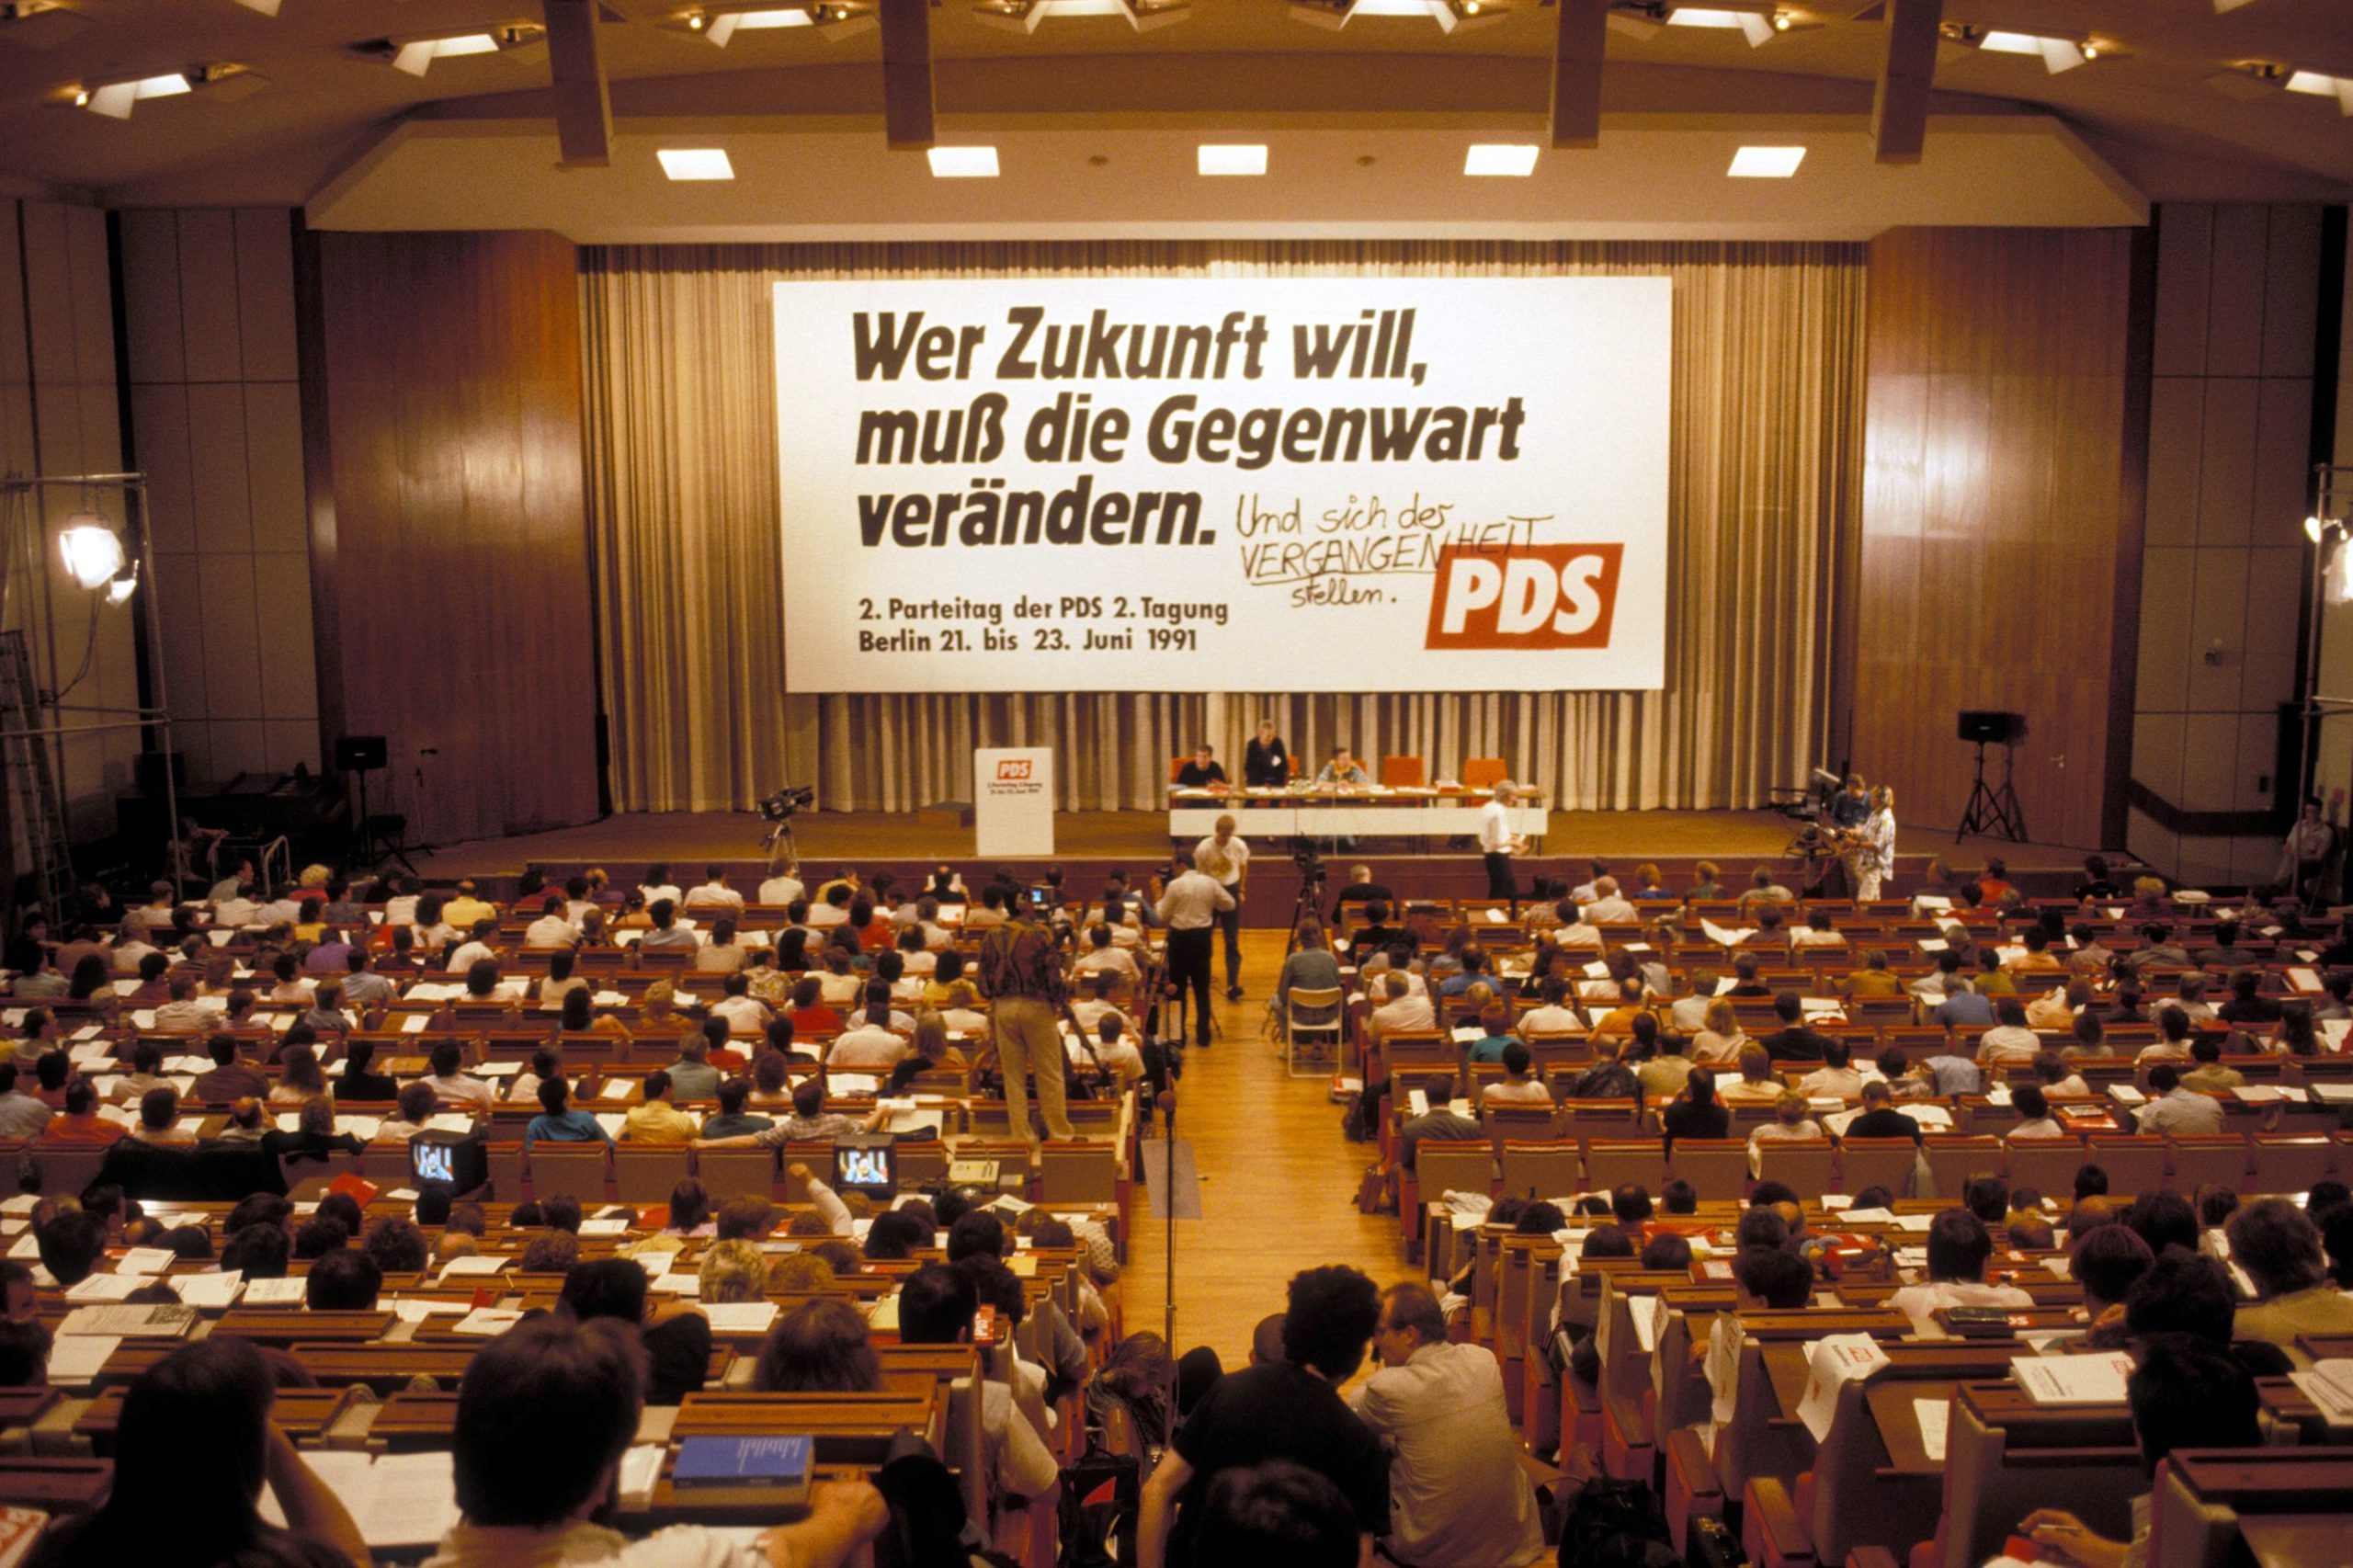 Zweiter Parteitag der PDS unter dem Motto "Wer Zukunft will, muß die Gegenwart verändern", 21. Juni 1991. Foto: Imago/Stana